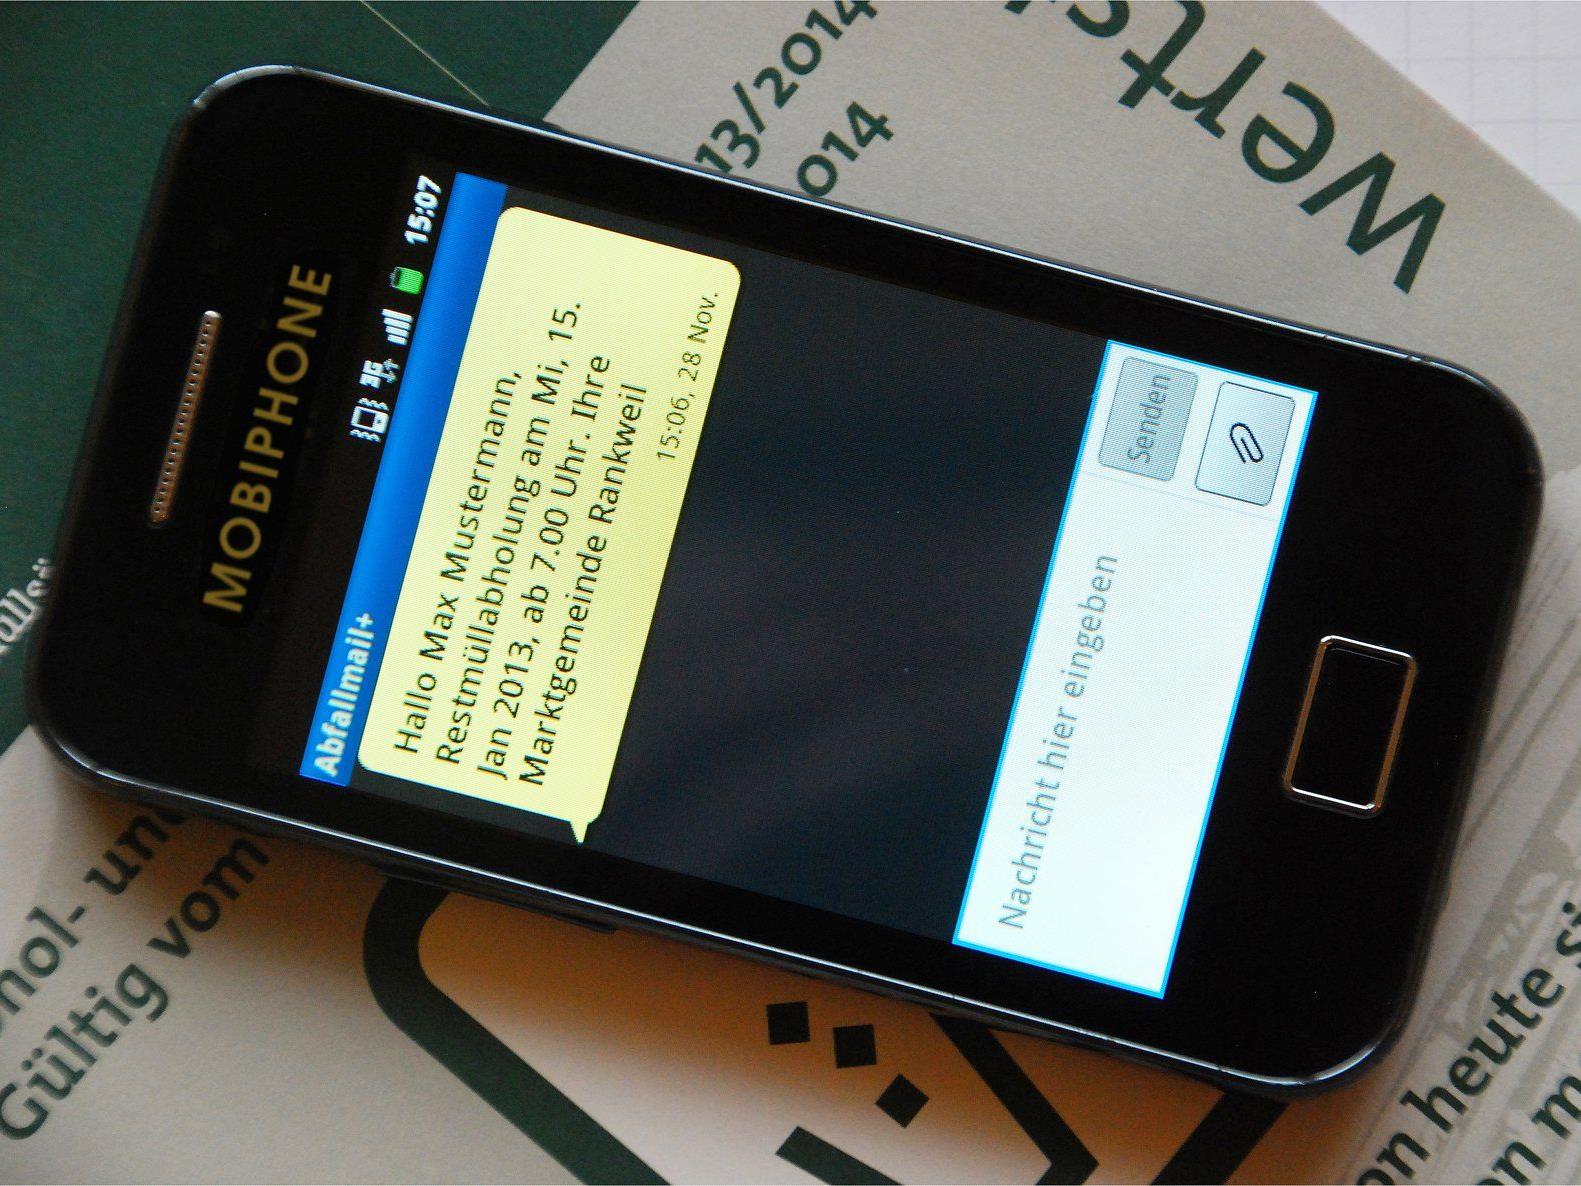 Abfall-Erinnerung per SMS oder E-Mail: Ab sofort für alle Haushalte in Rankweil verfügbar.